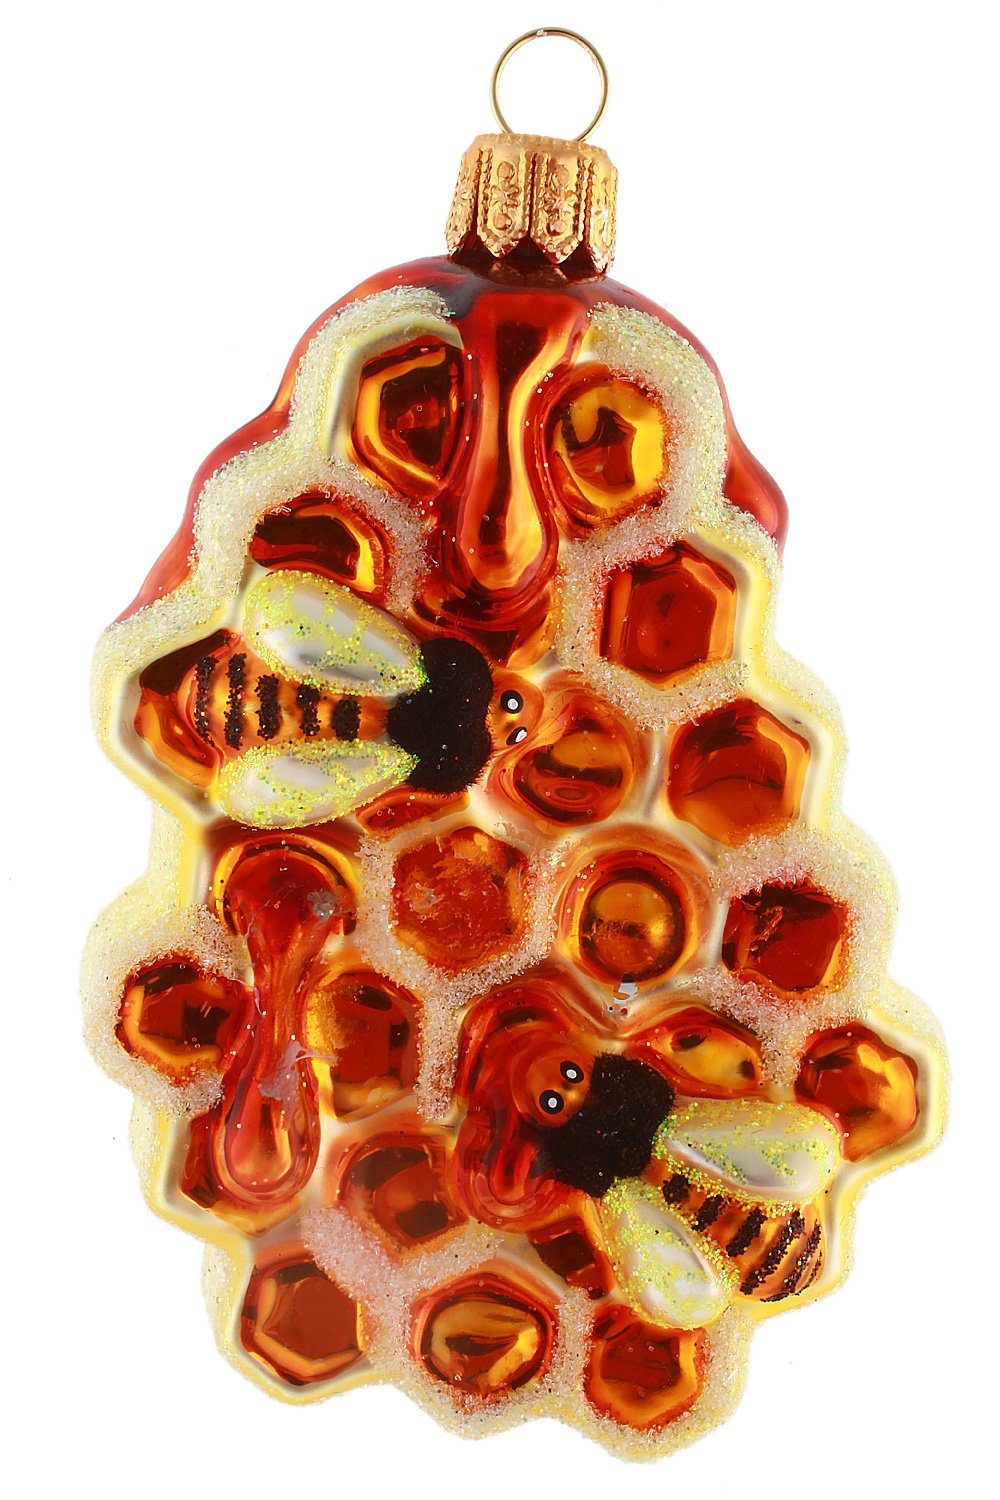 Hamburger handdekoriert - Christbaumschmuck Honigwabe Weihnachtskontor Bienen, mundgeblasen mit